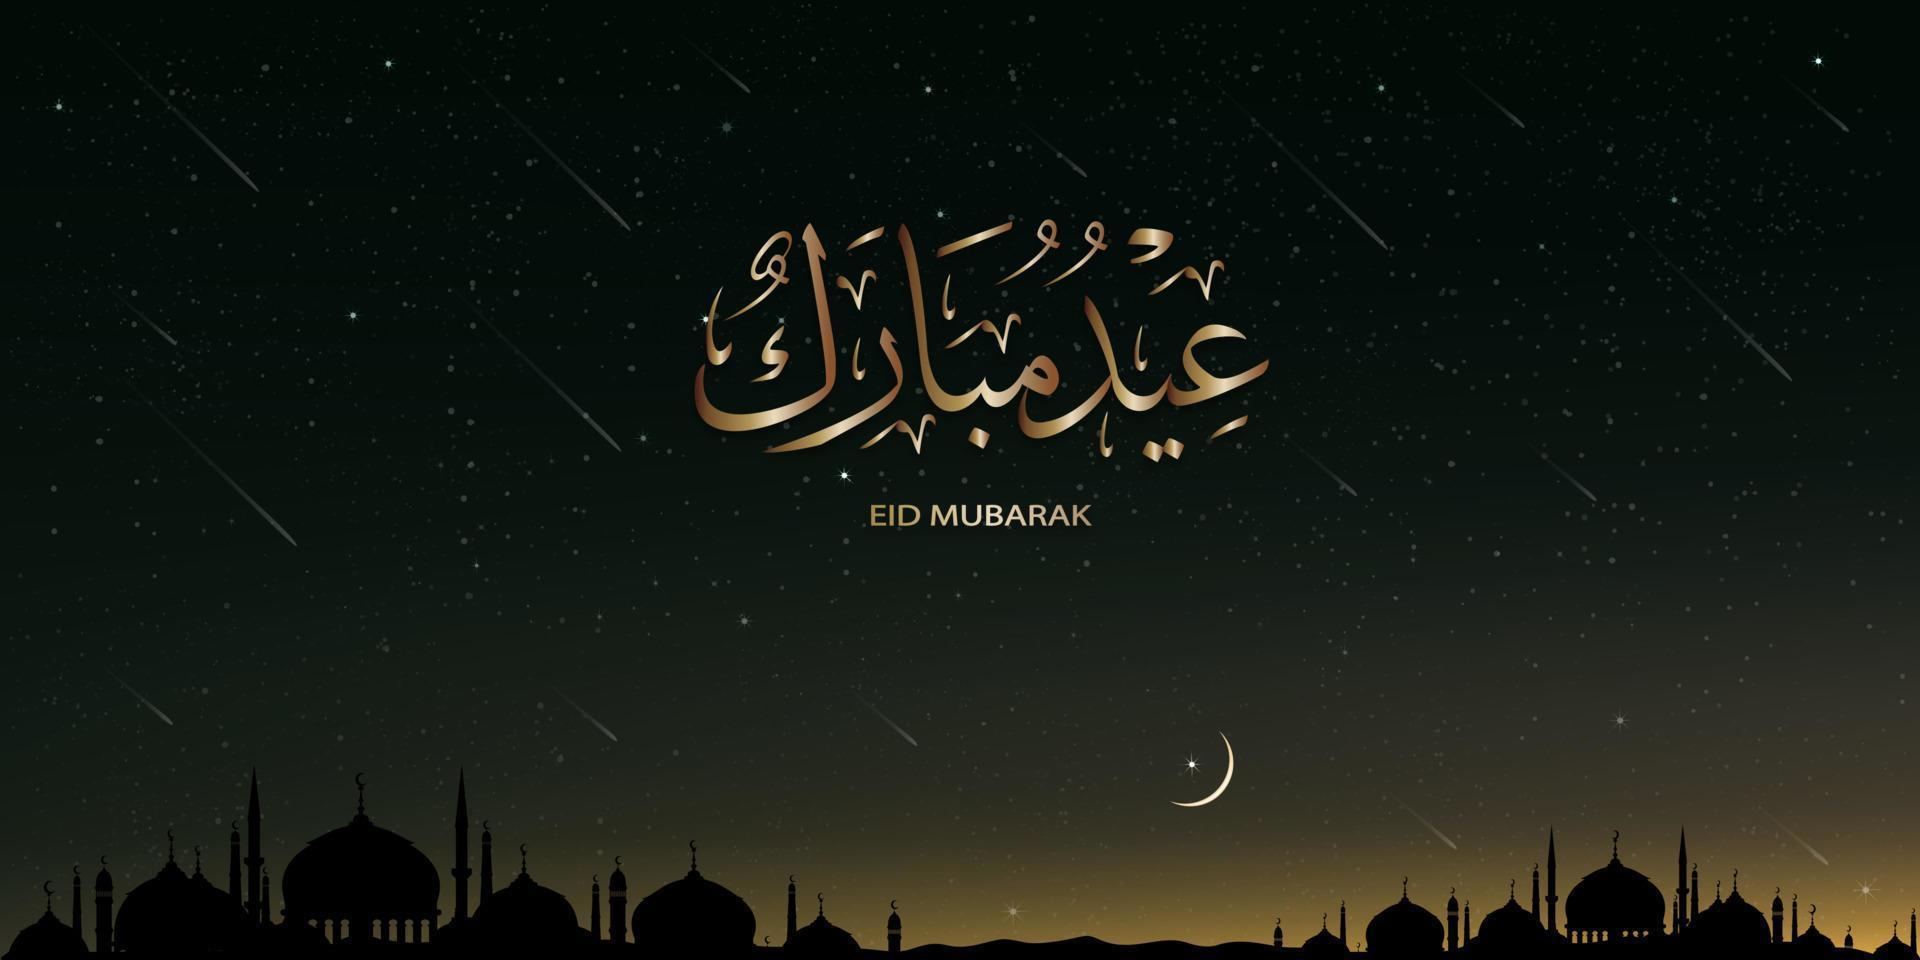 caligrafía de eid mubarak, silueta de mezquita en el paisaje del cielo nocturno con cielo estrellado, vía láctea y caída de cometas, telón de fondo del islam vectorial religión musulmana simbólica para eid al fitr, ramadan kareem, eid al adha vector